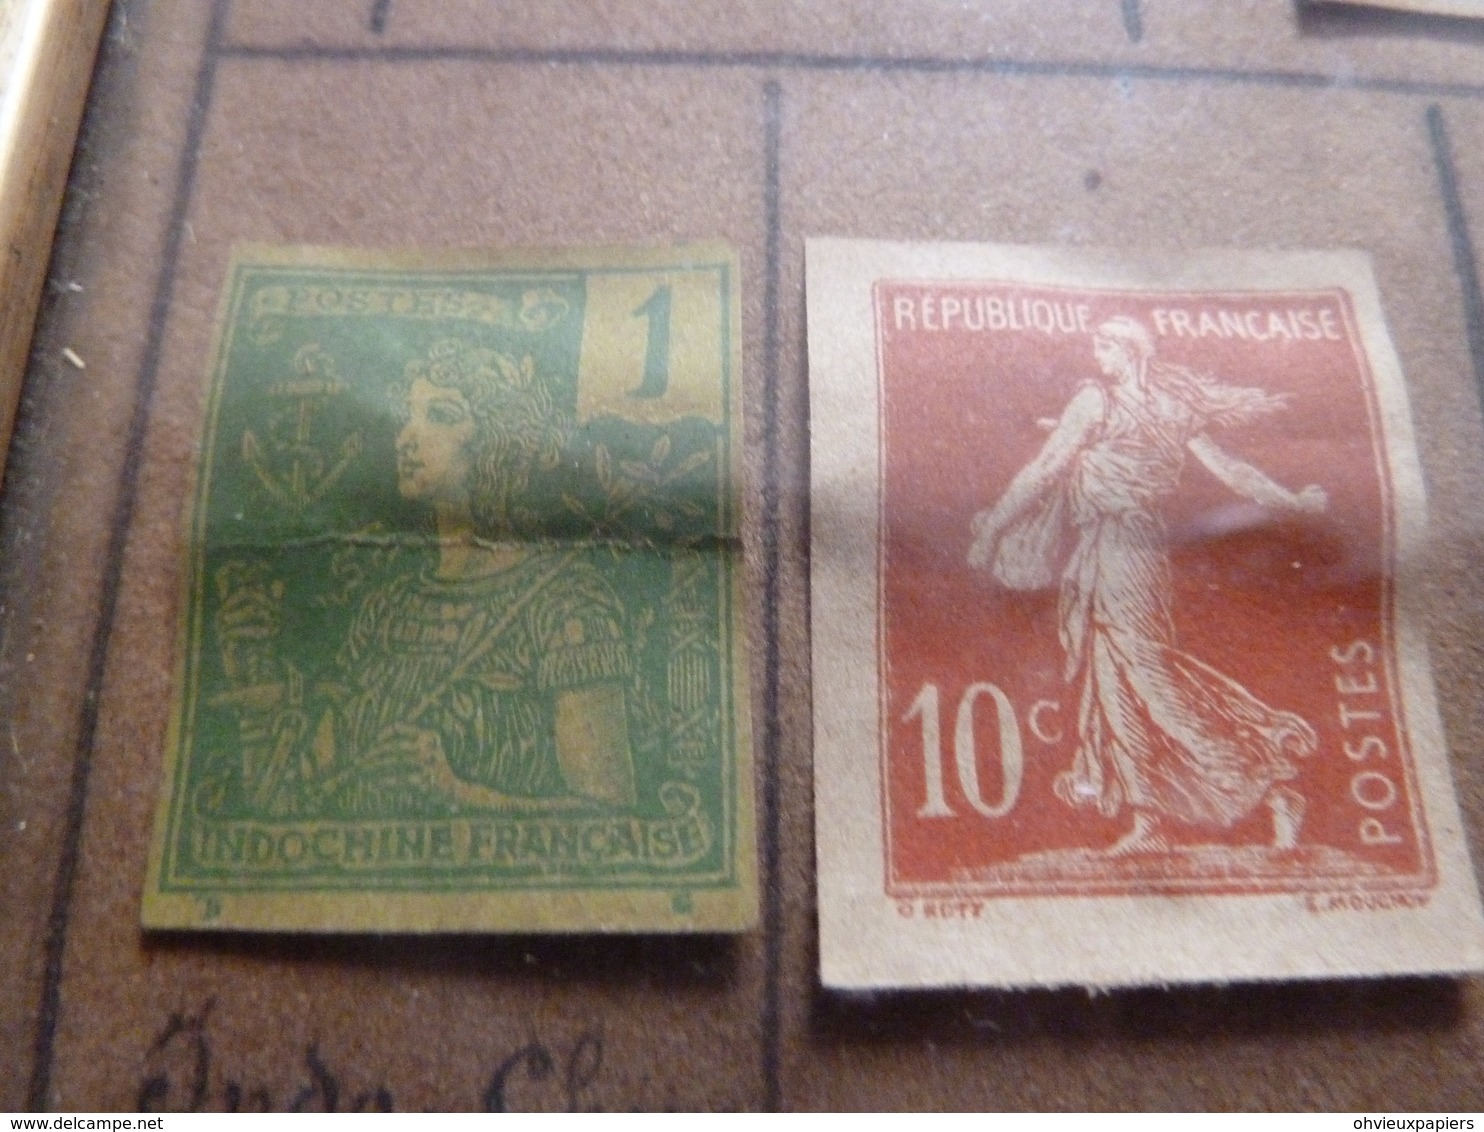 18 timbres essais du timbre poste  LA SEMEUSE  par  OSCAR ROTY et LOUIS EUGENE MOUCHON  vers 1900